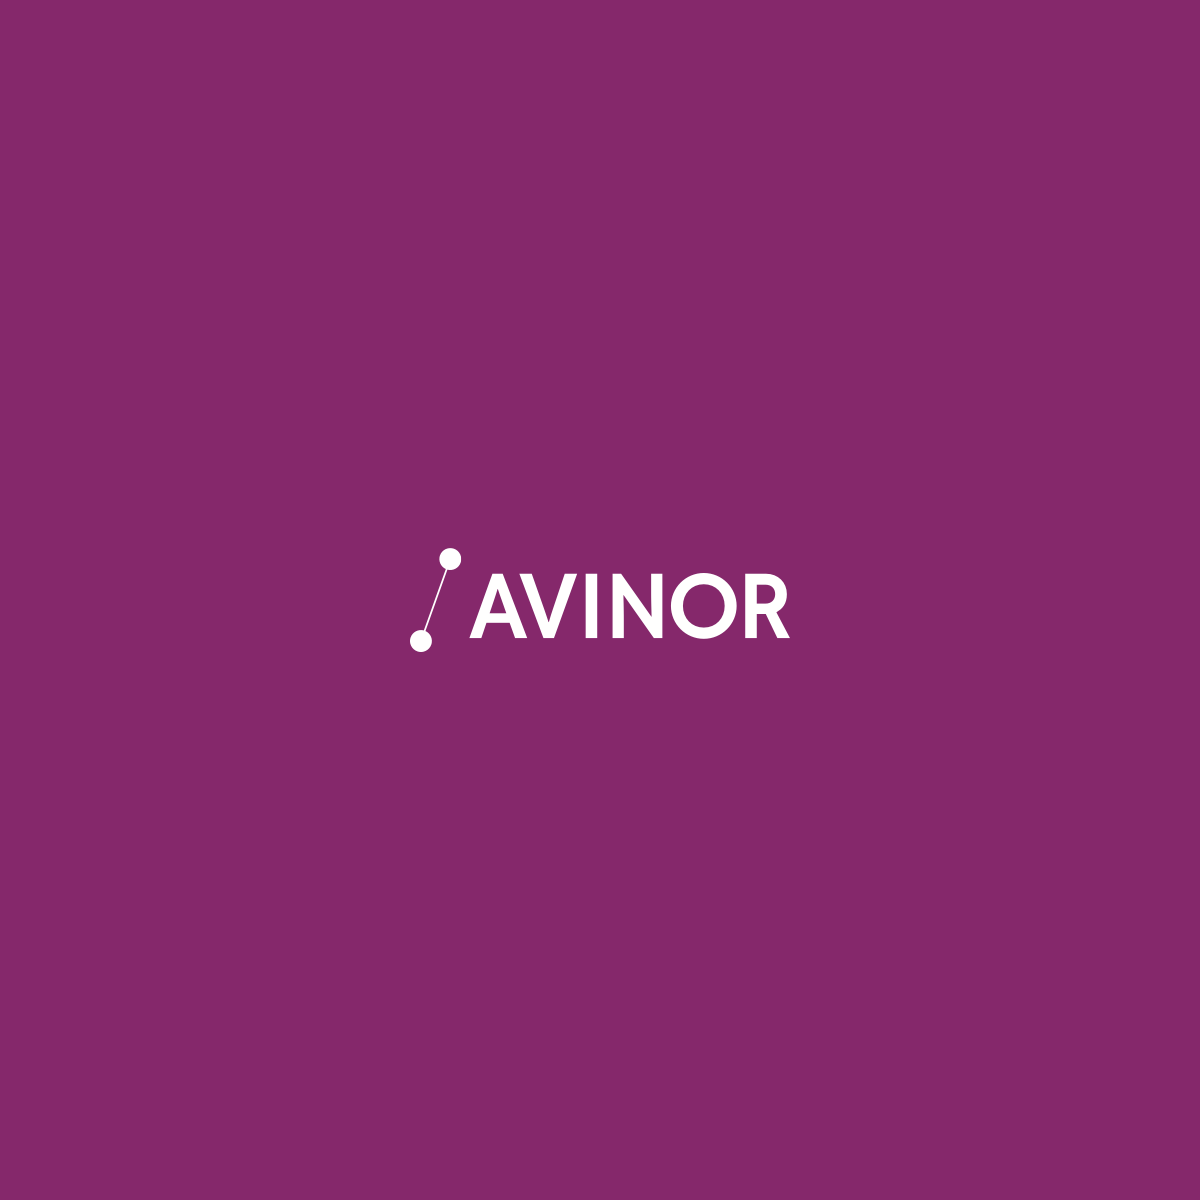 Flight - Avinor